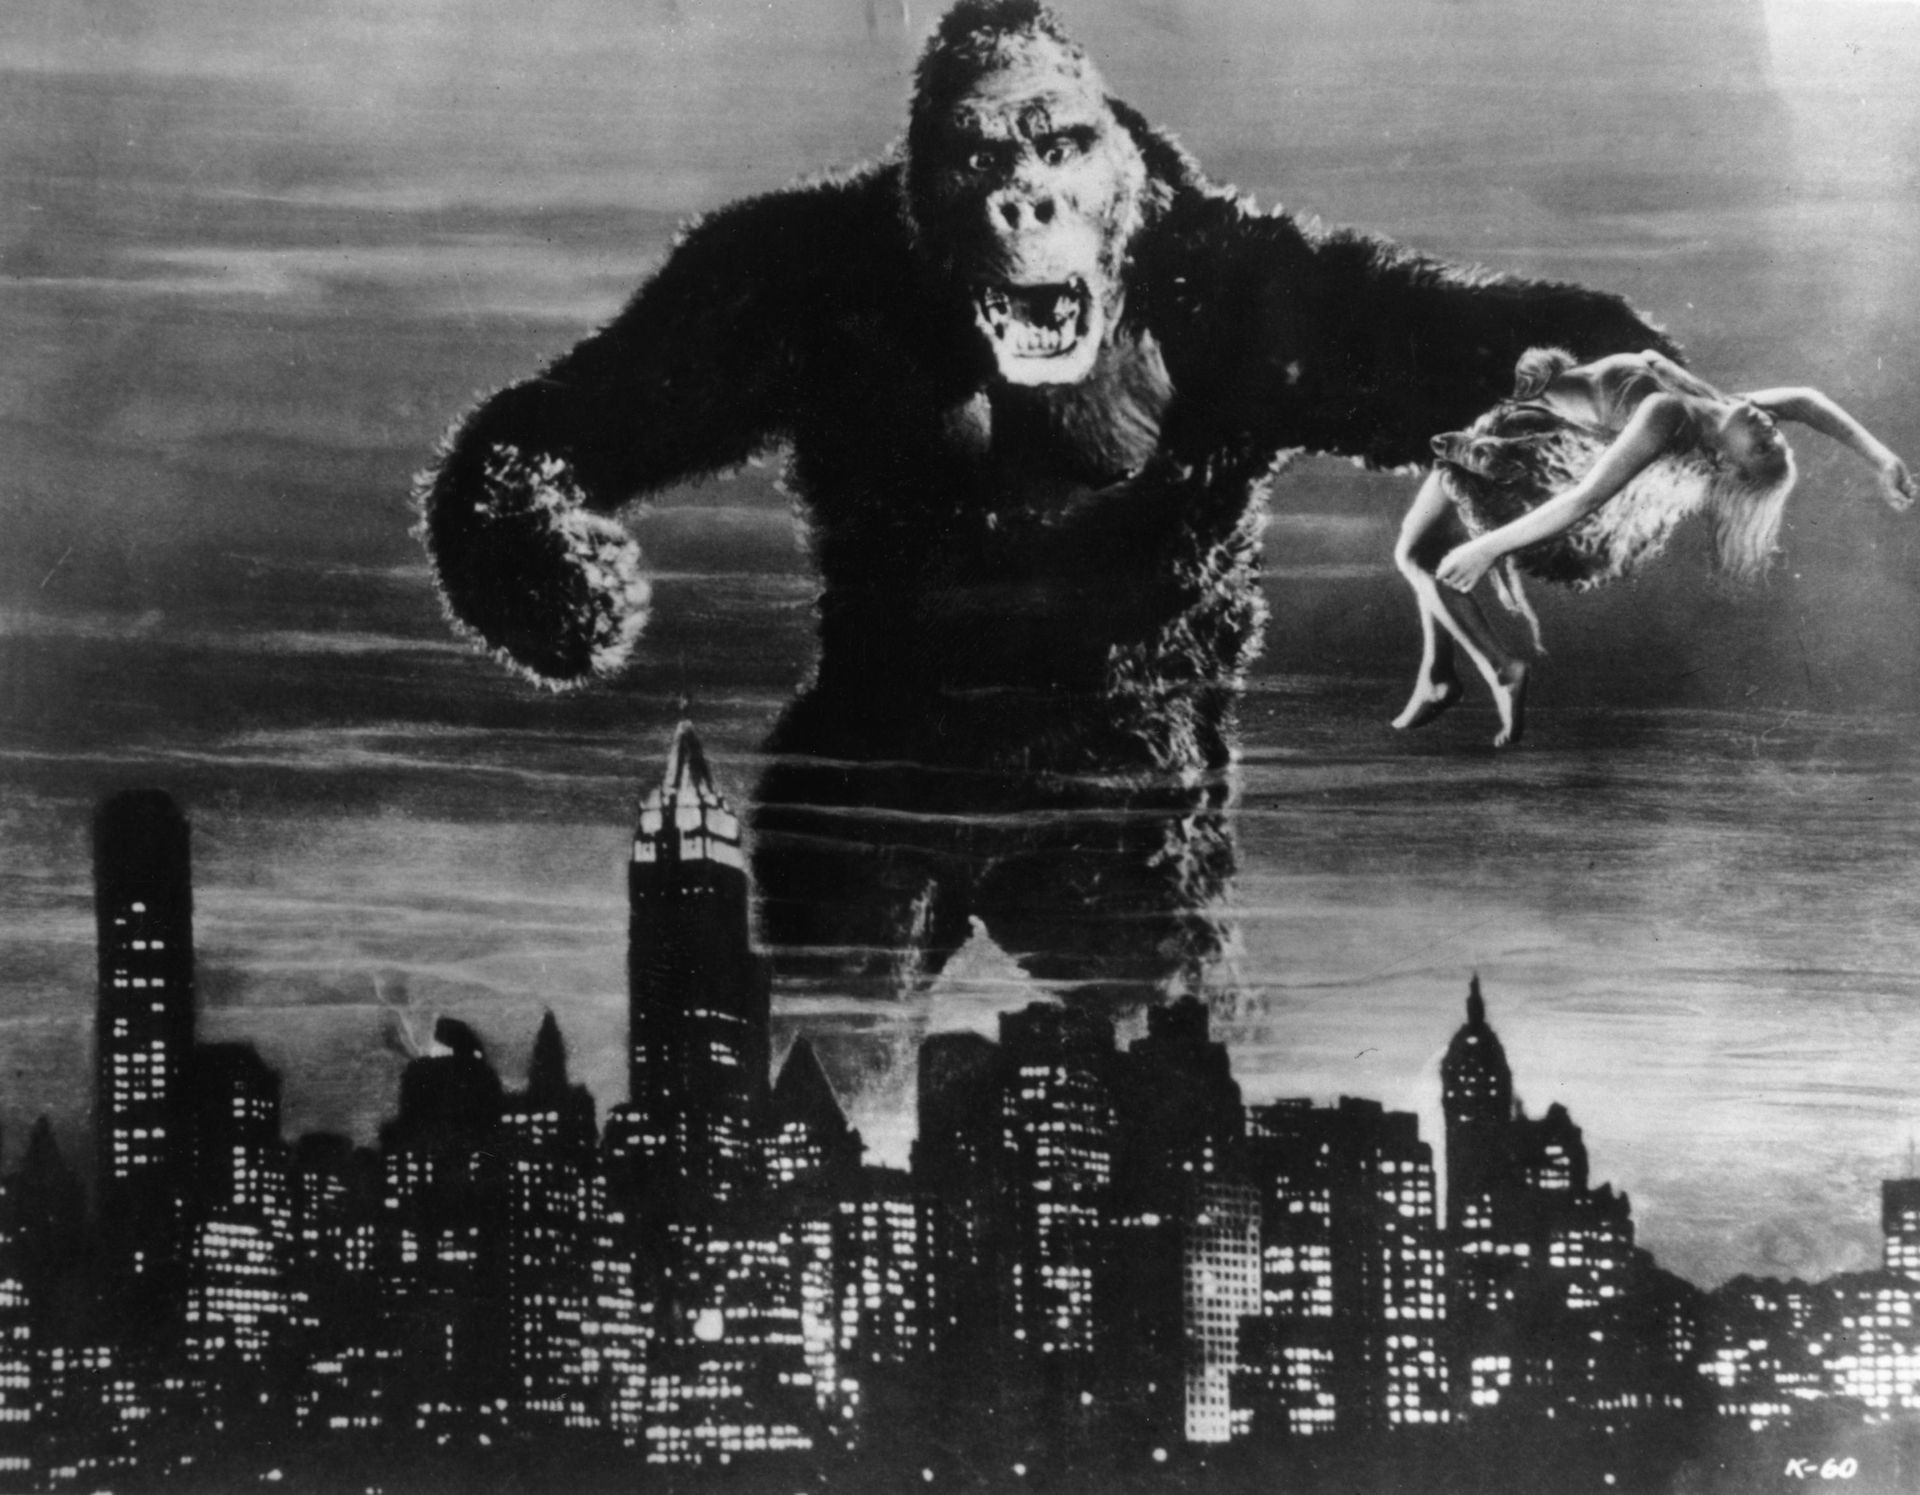 King Kong (1933) a des traits du gorille de "L'île noire"